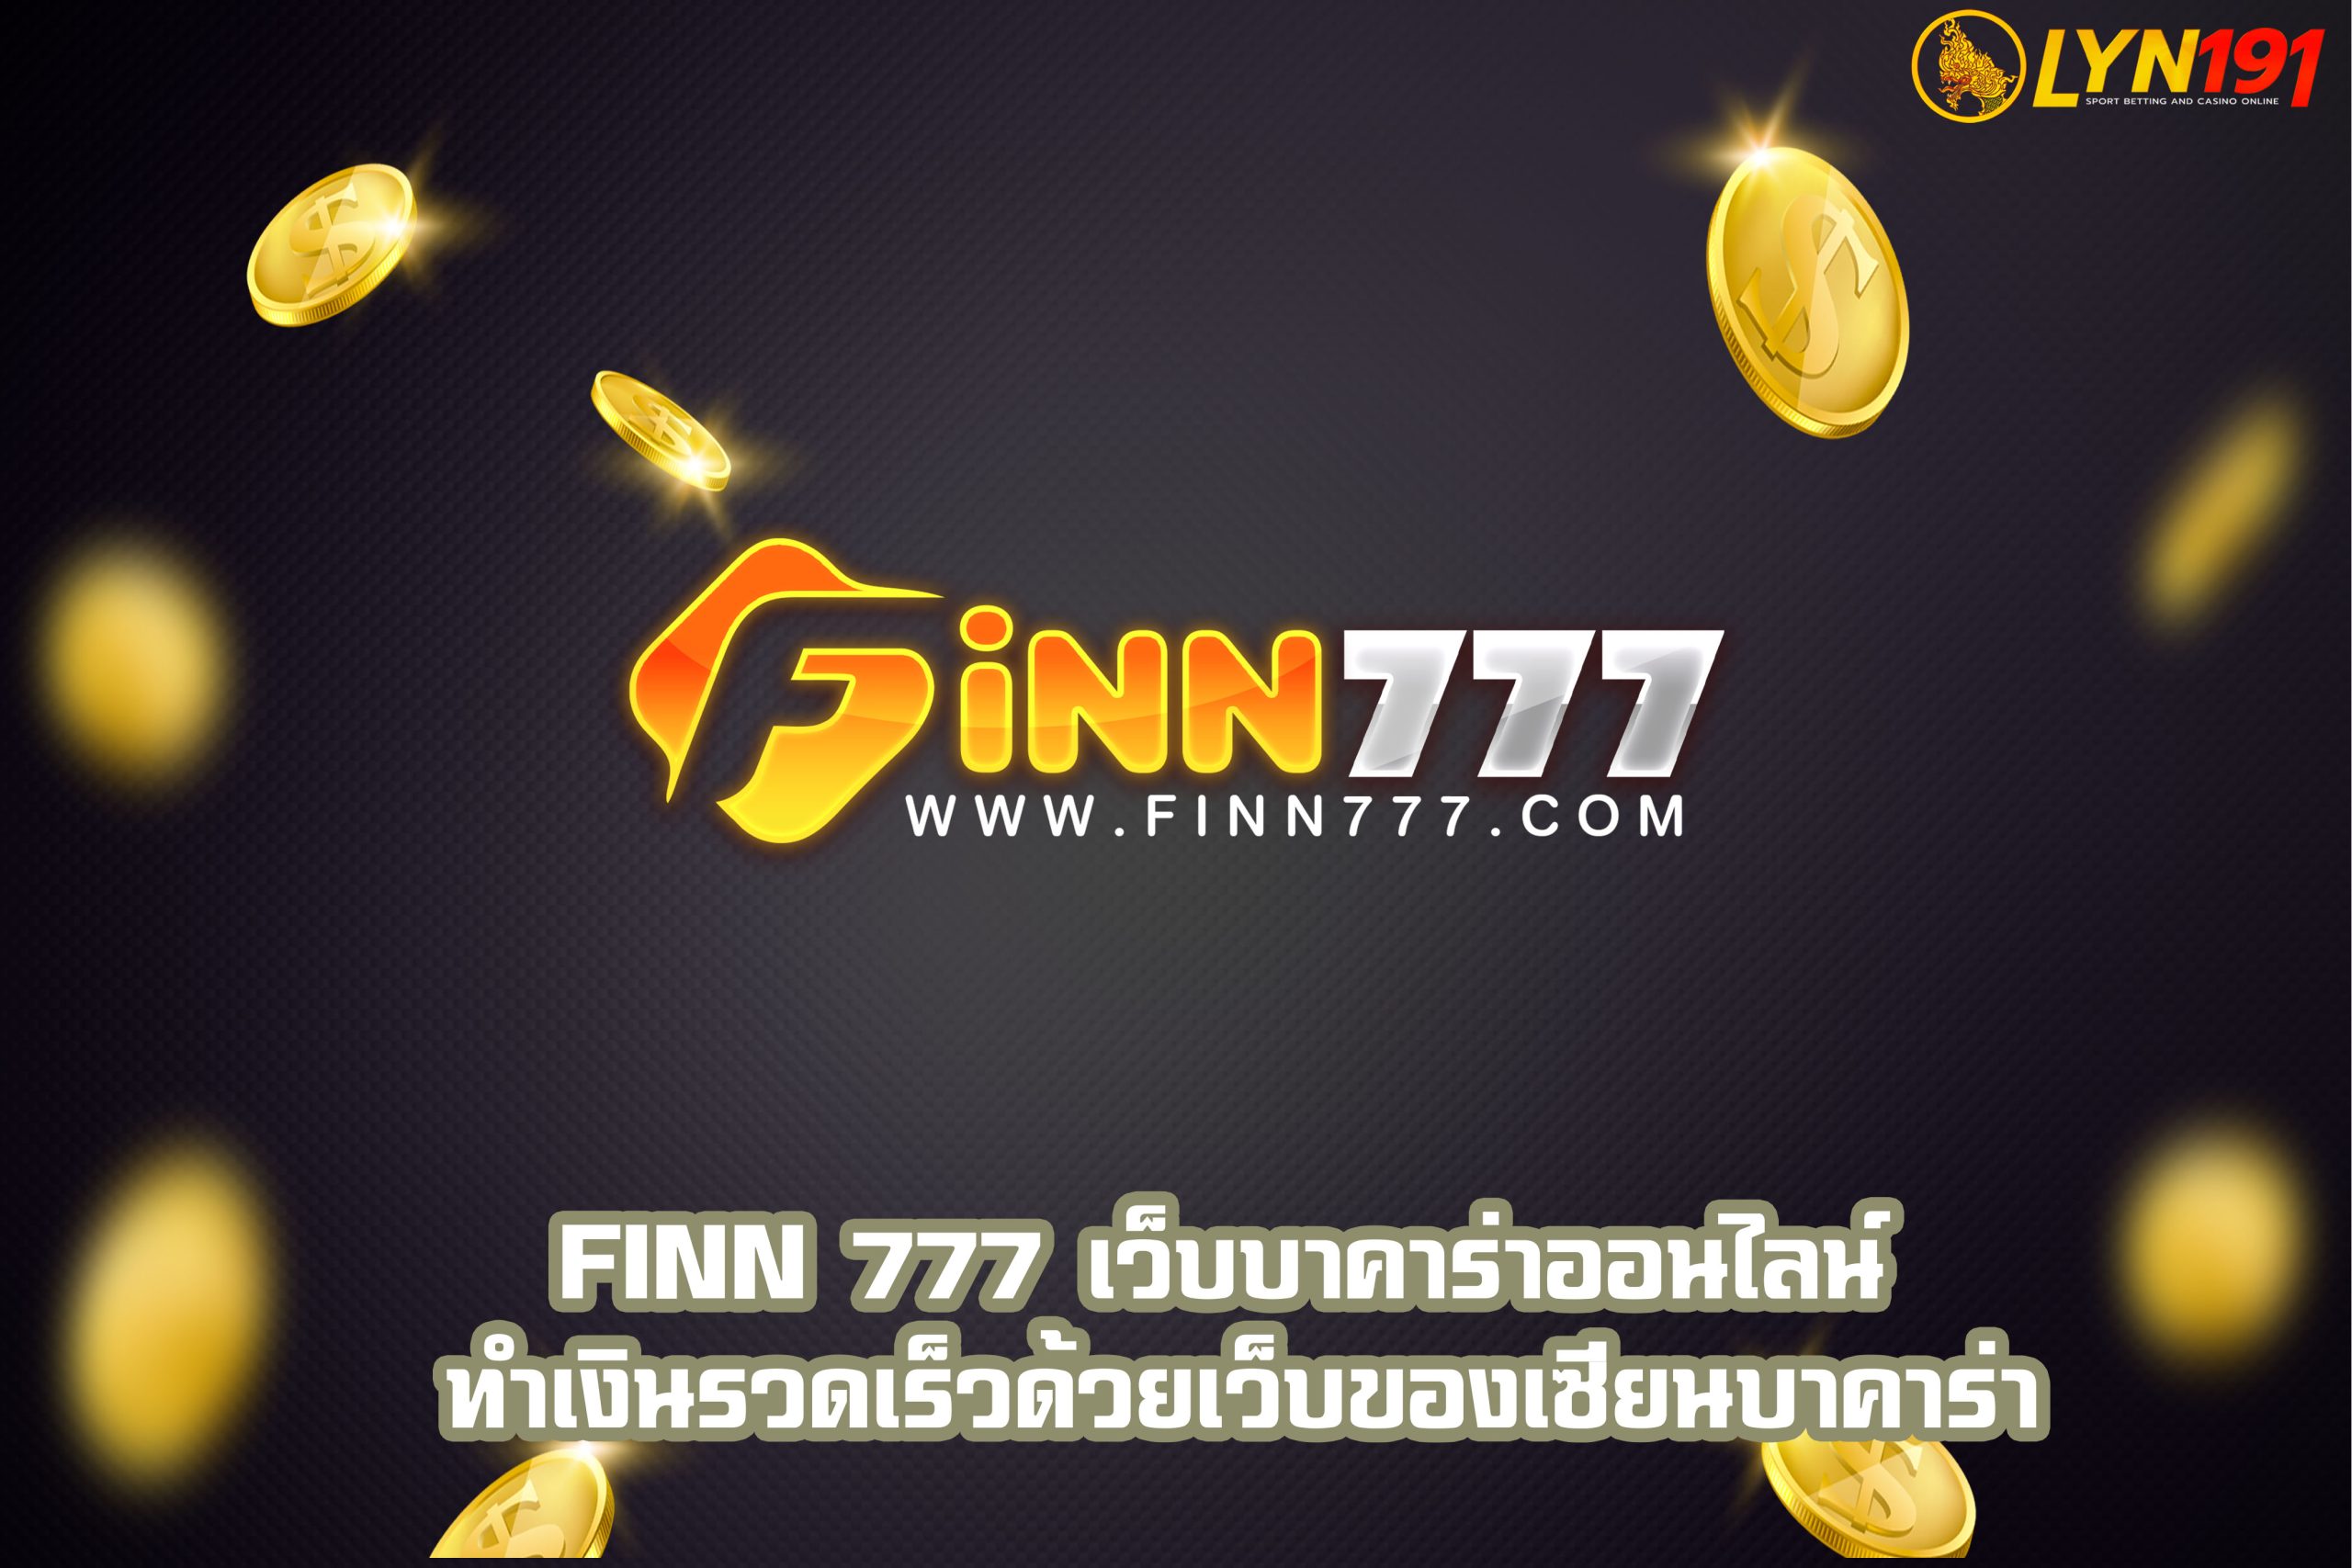 FiNN 777